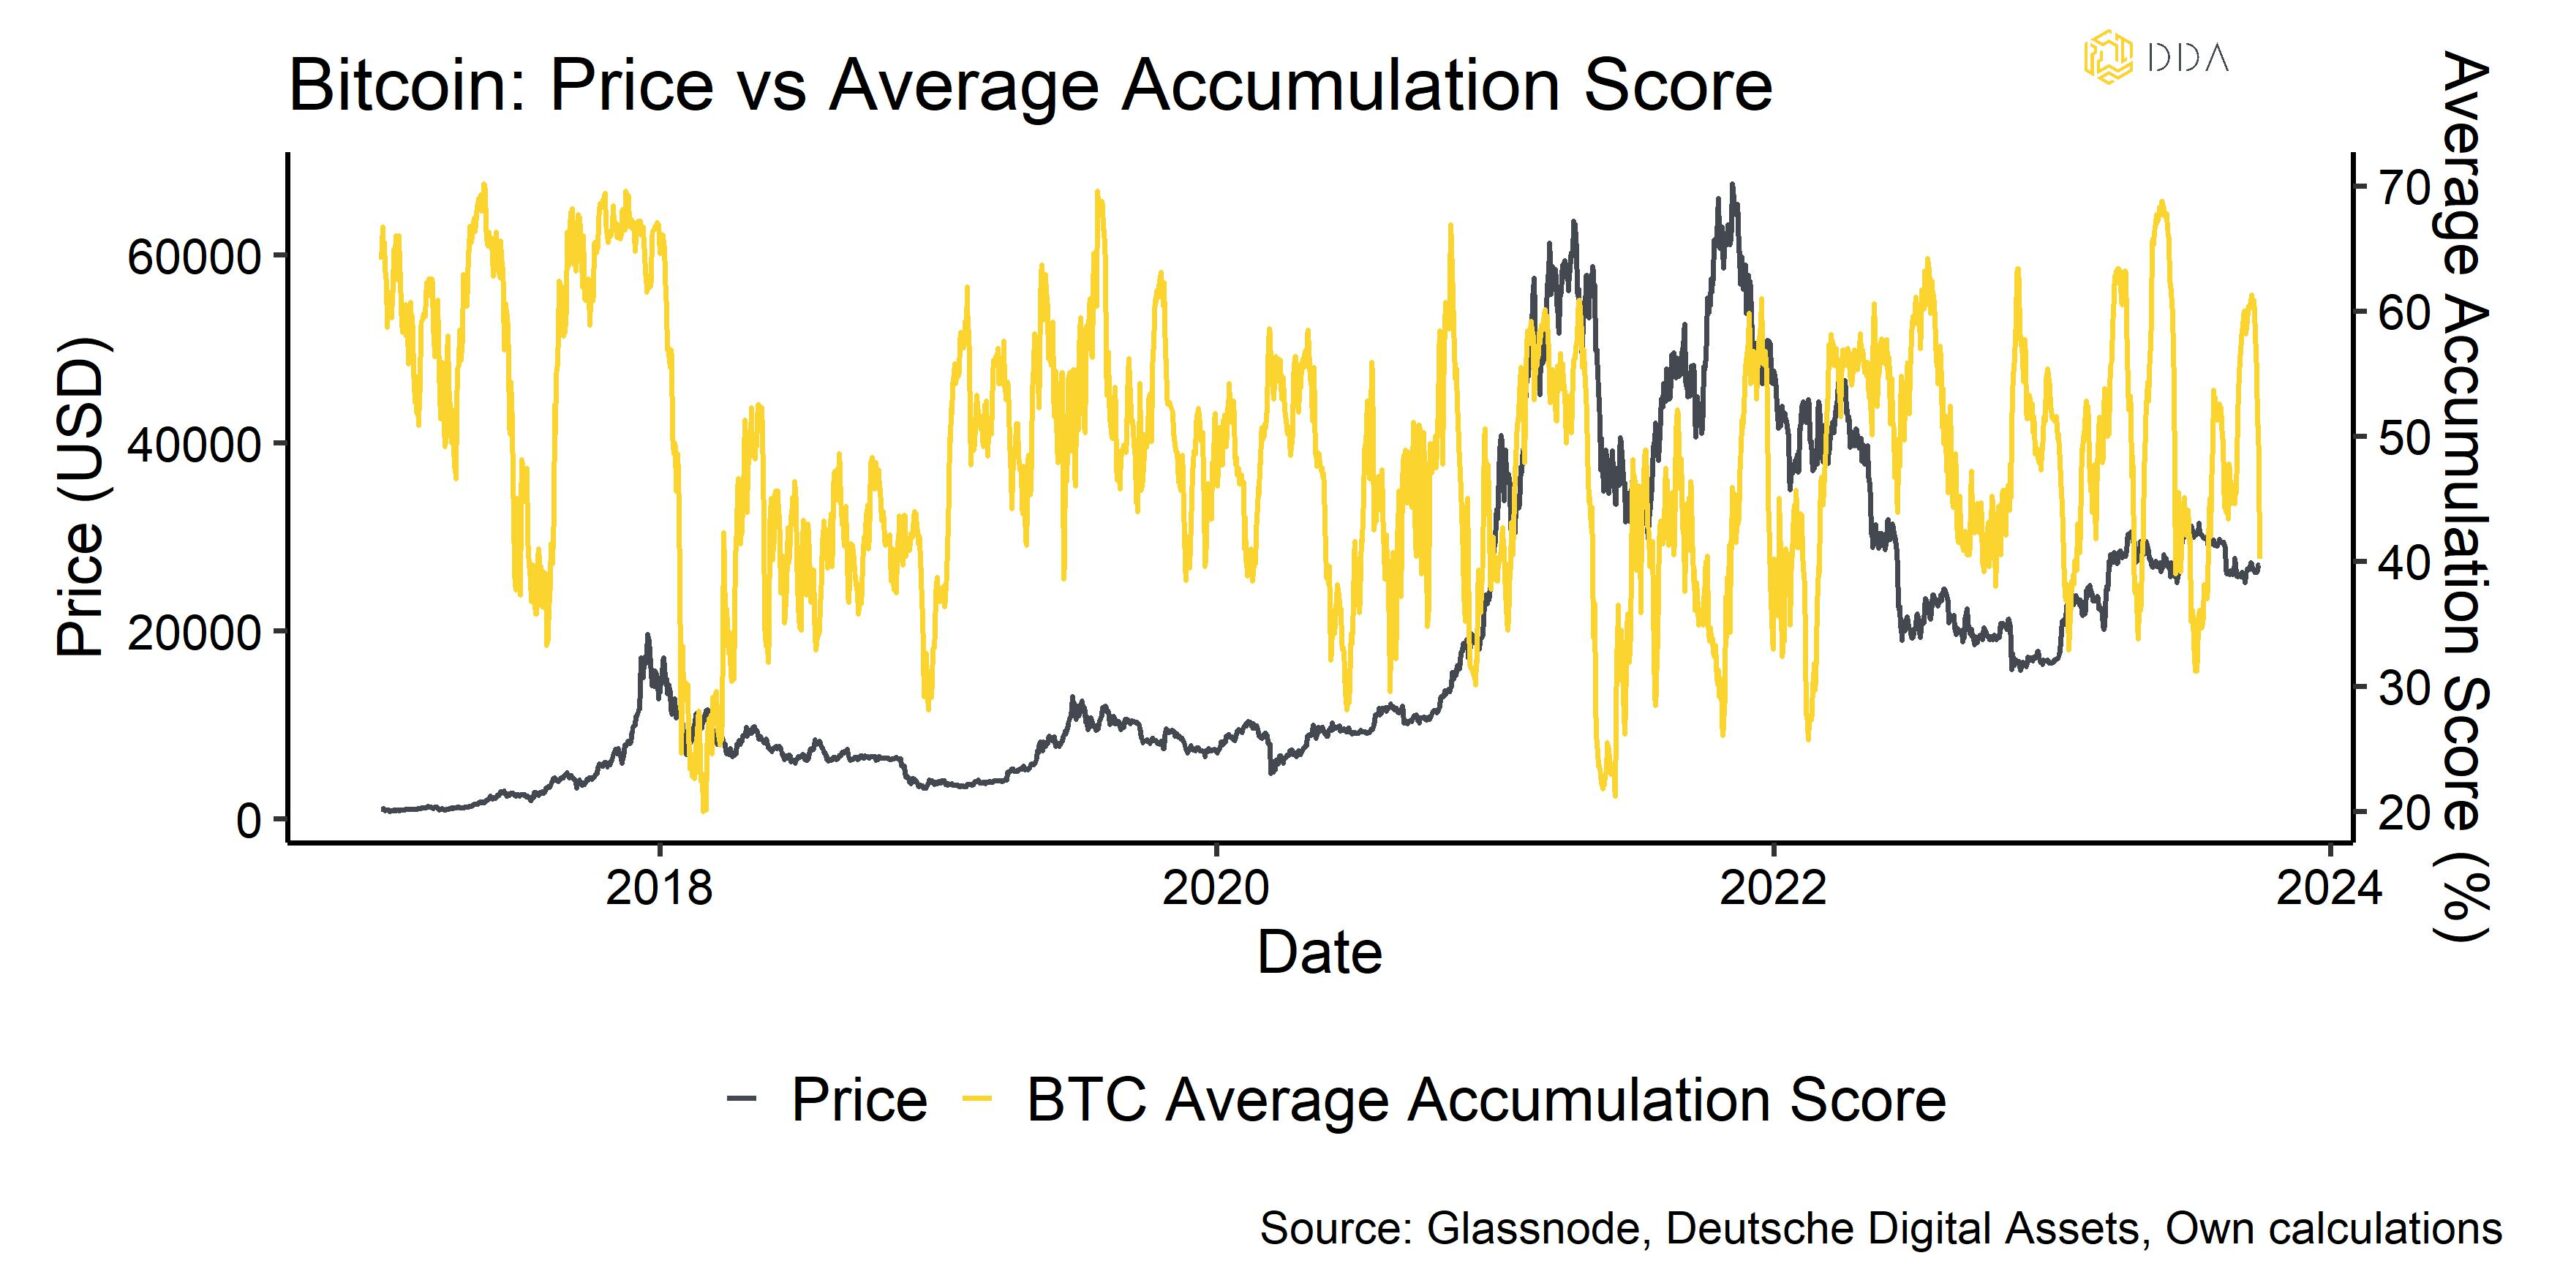 Bitcoin: Price vs Average Accumulation Score